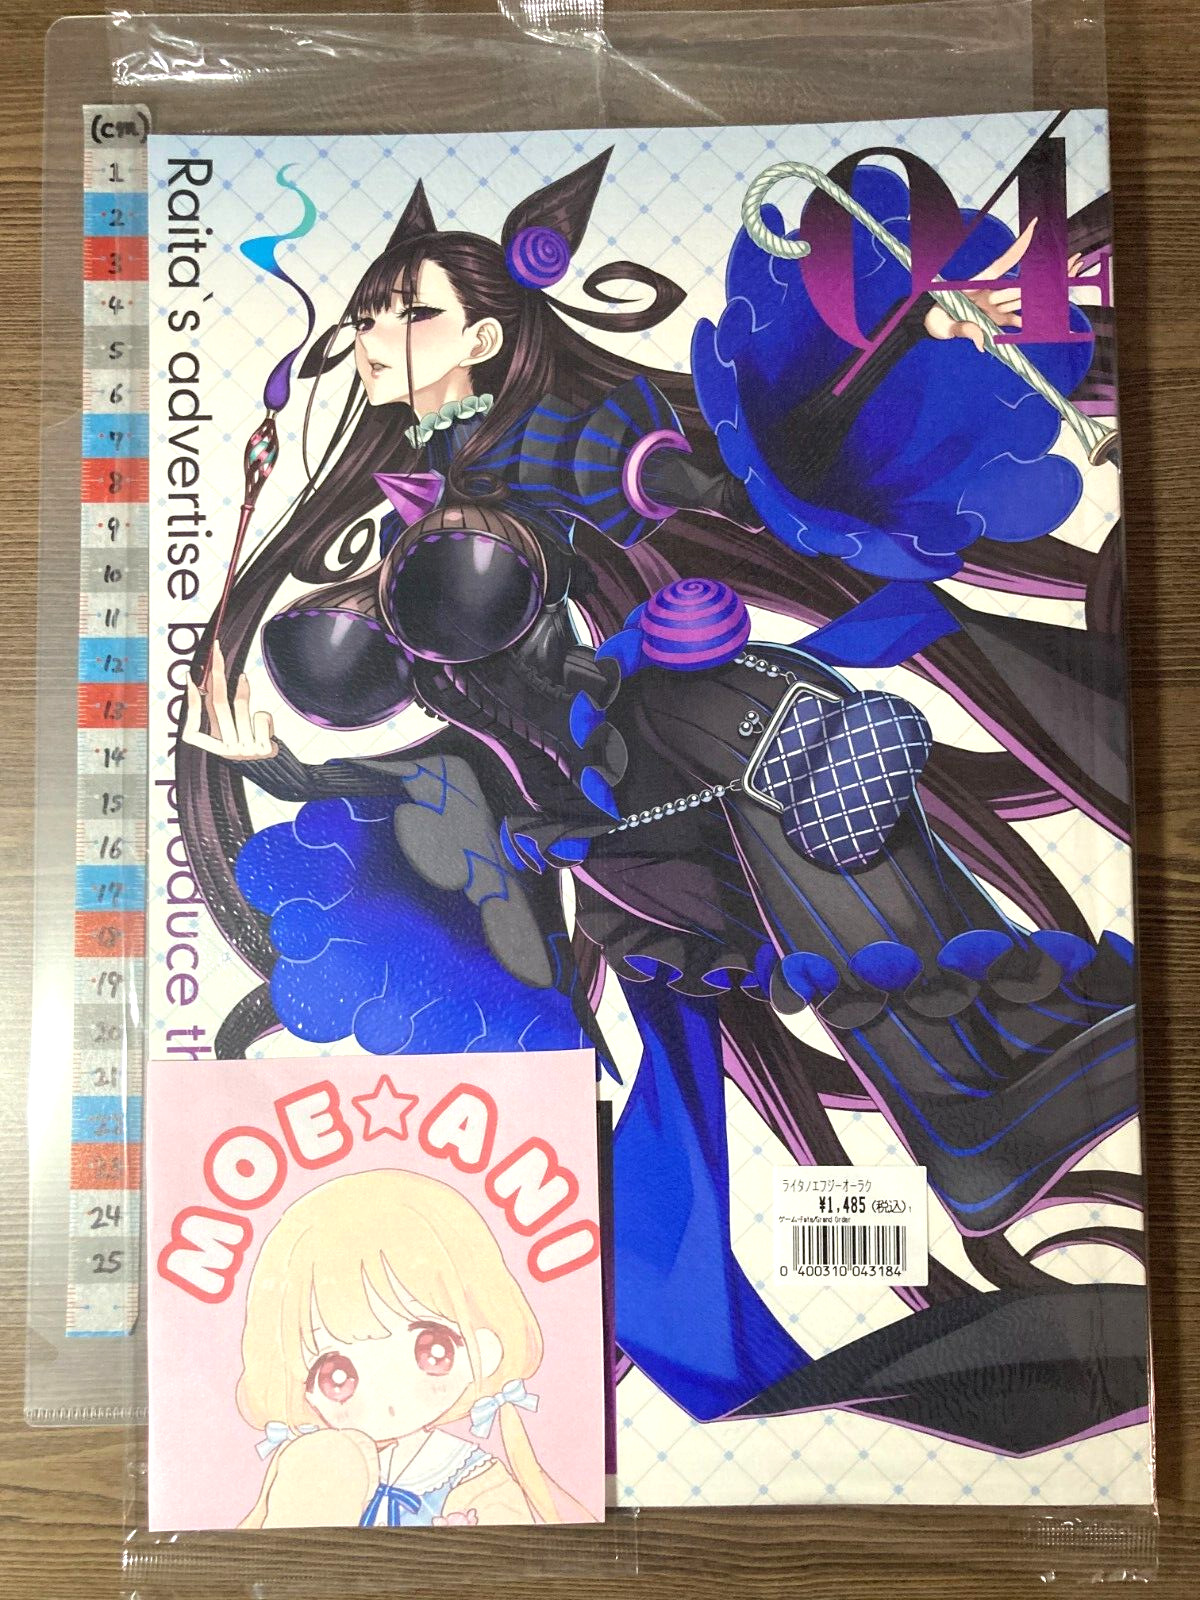 Raita No FGO Rakugaki Book 4 Fate Art Book Zettai Shoujo A4/36P Doujinshi /Fedex